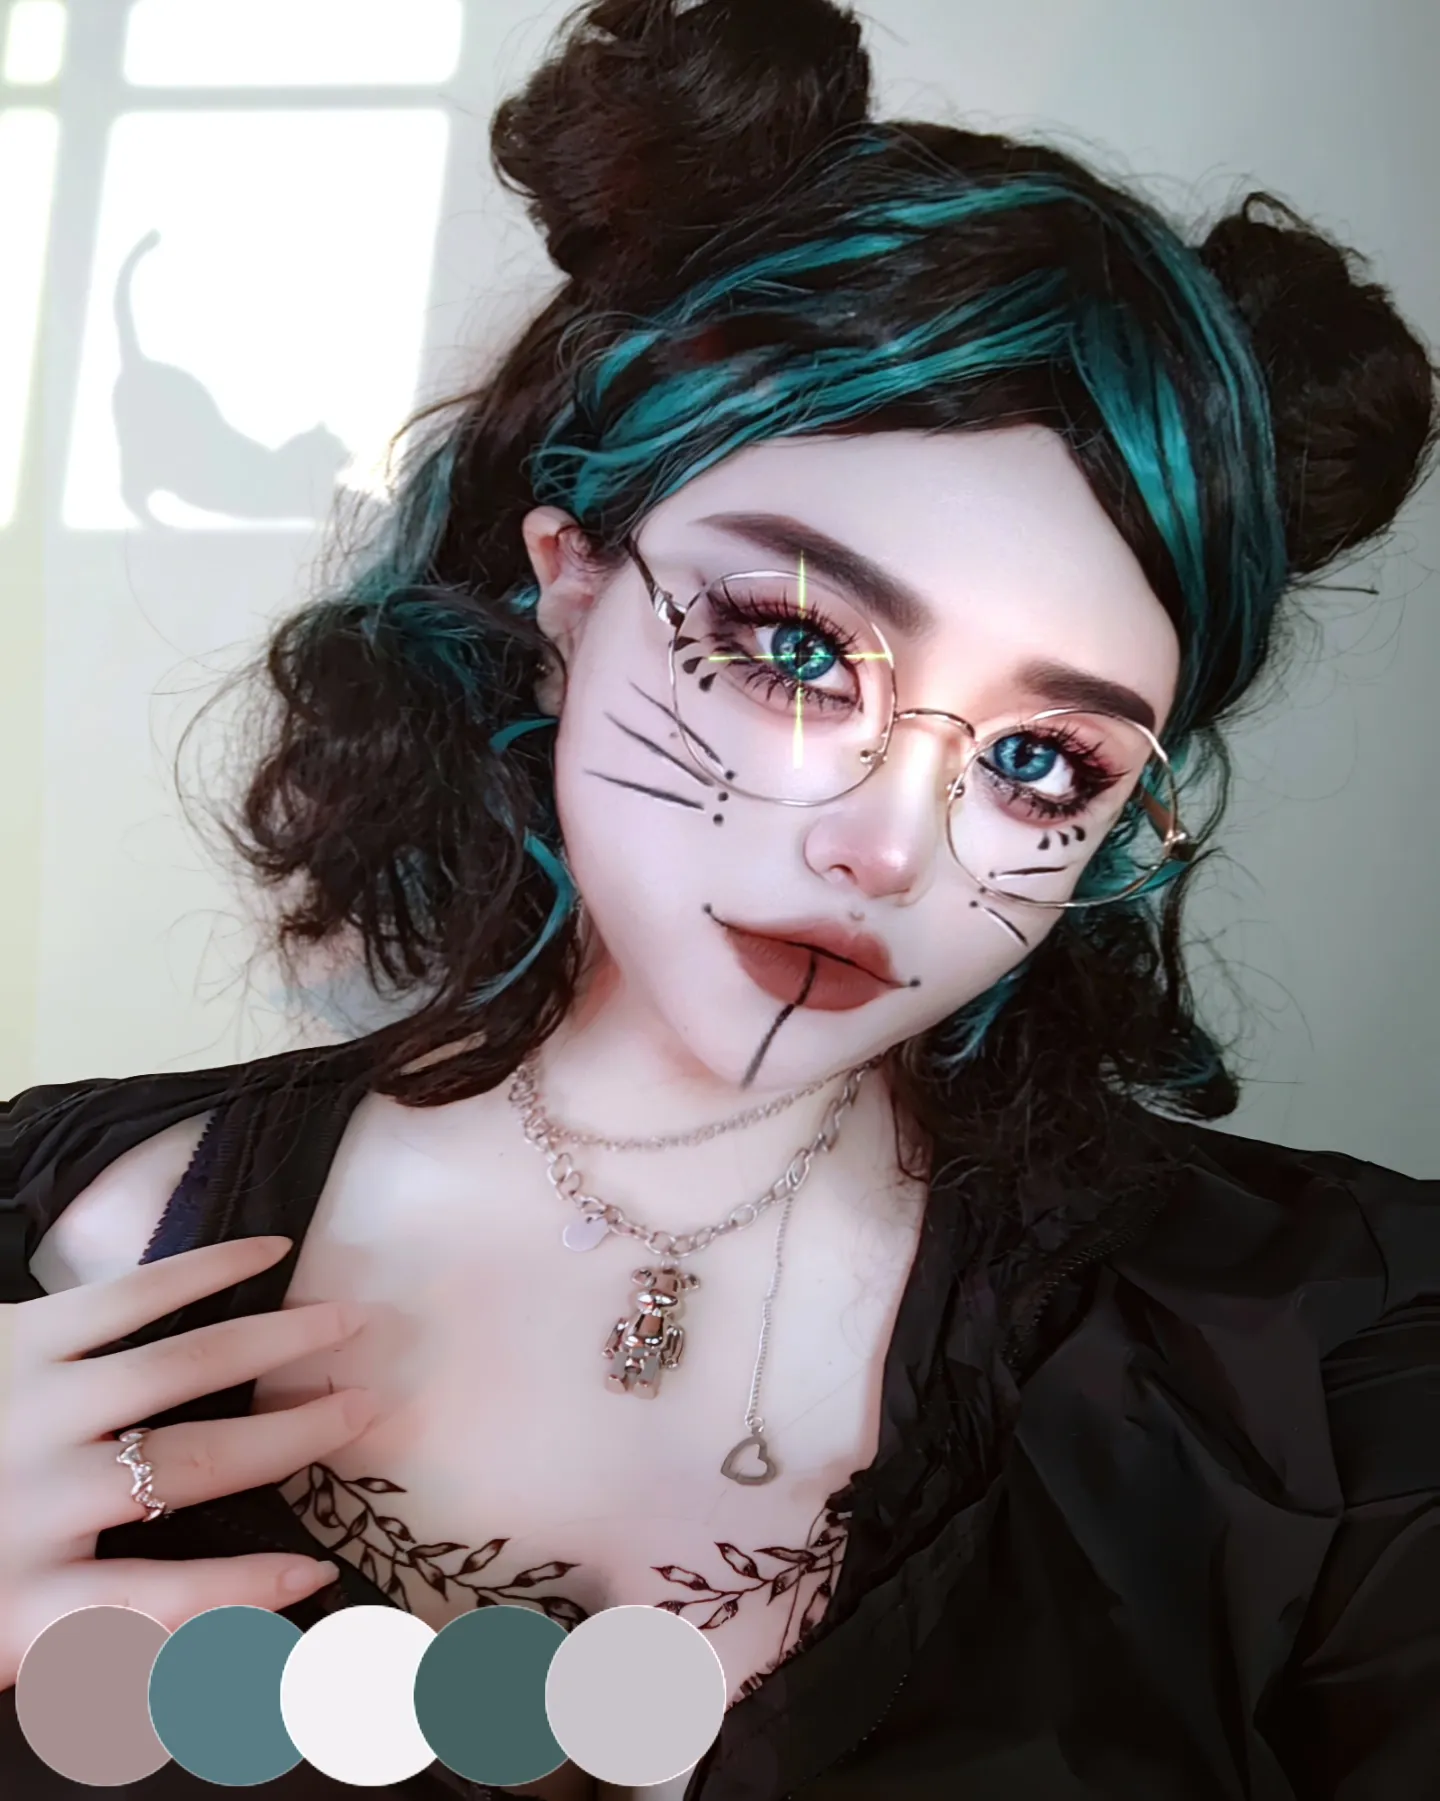 Dark Cat Eye Cyberpunk Makeup Look